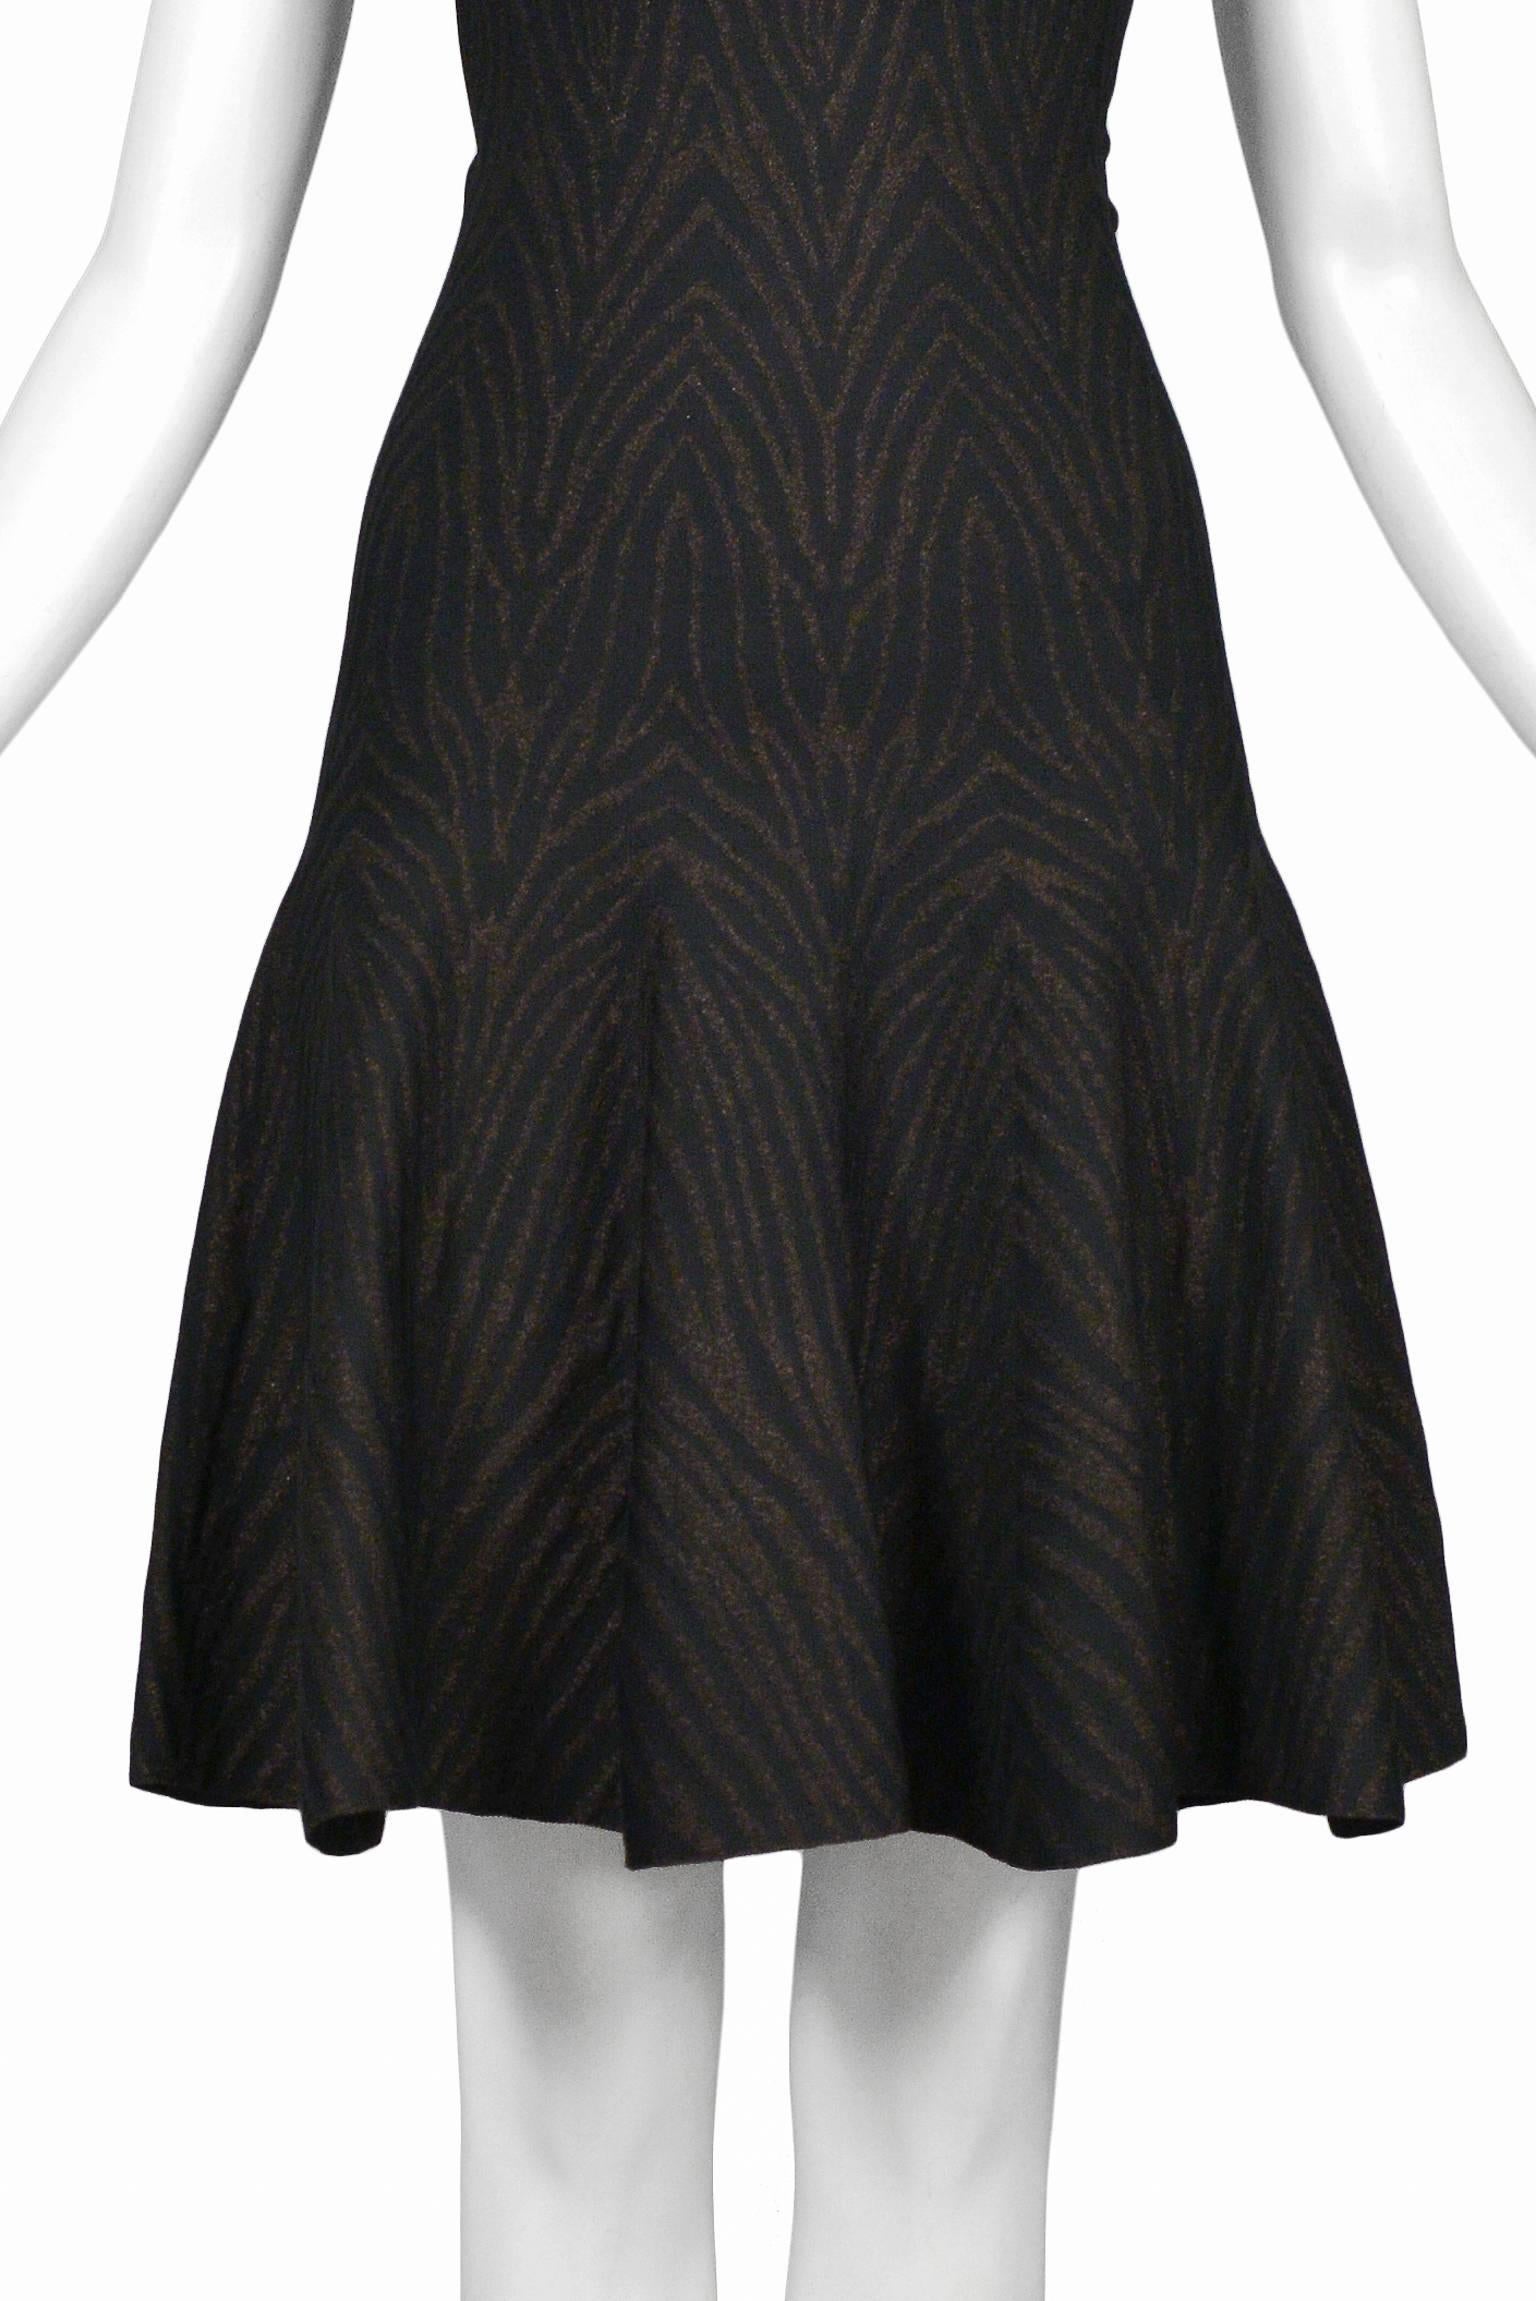 Alaia Metallic Zebra Knit Circle Dress 1